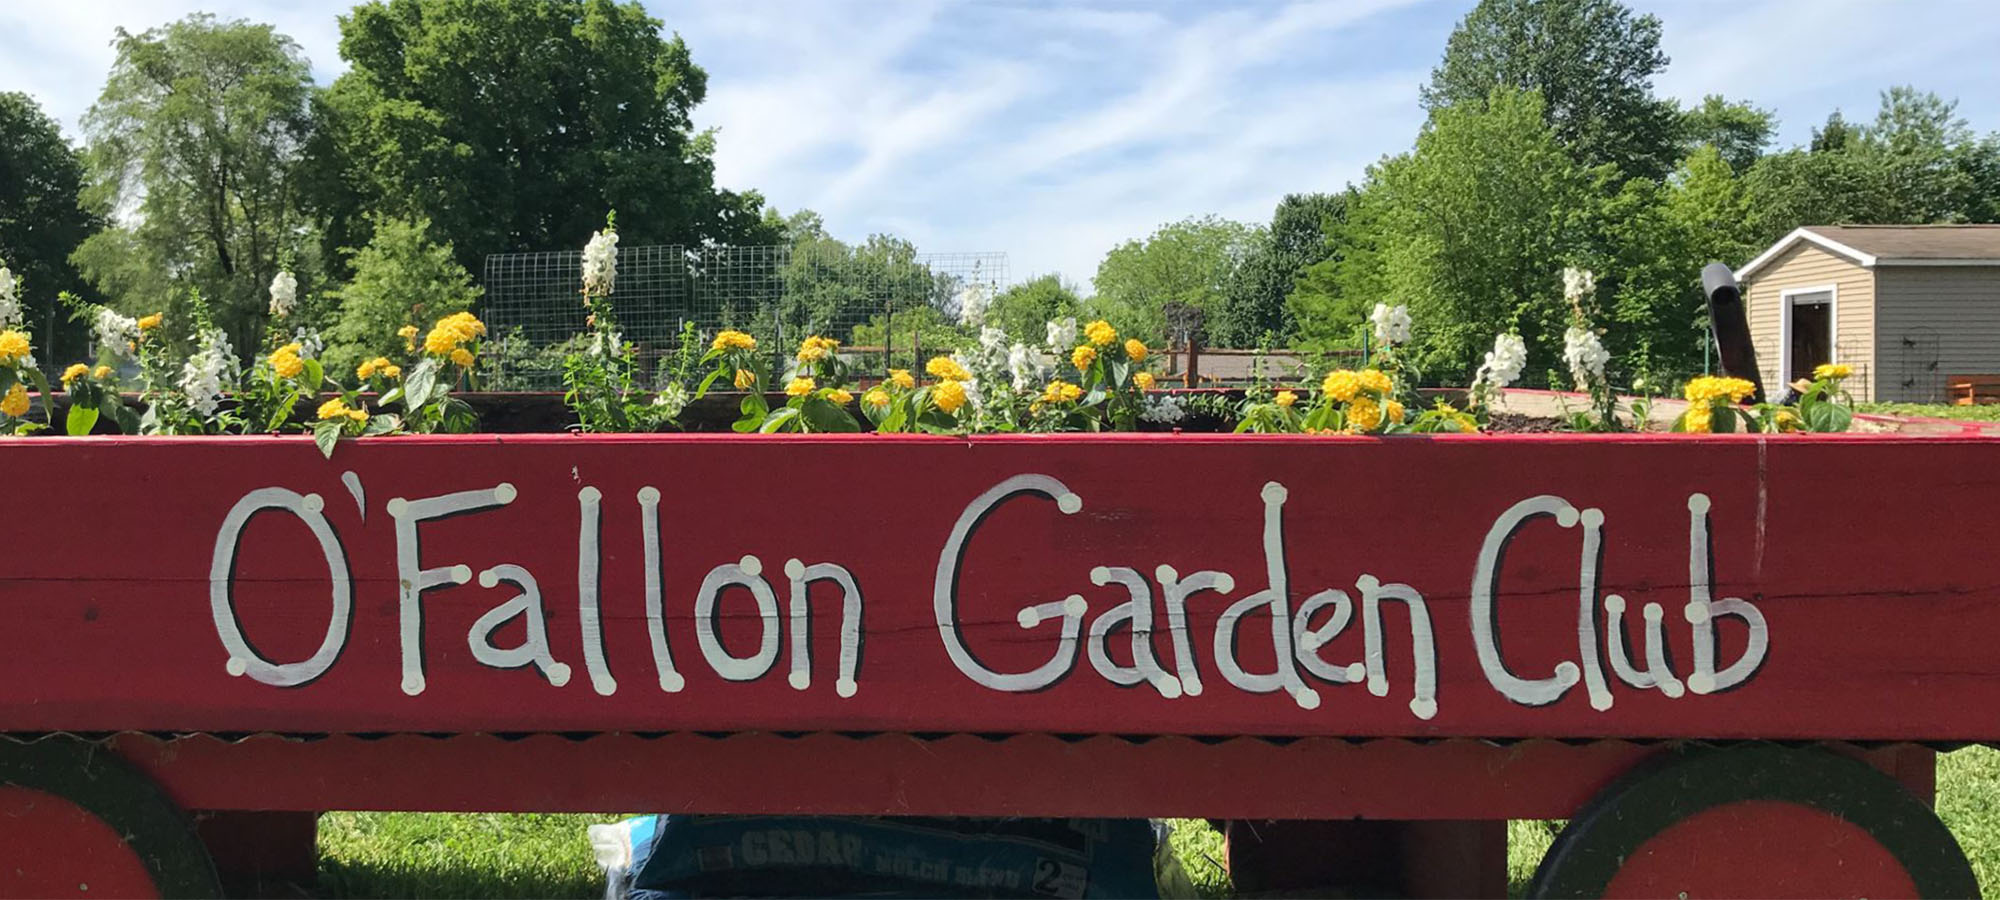 O'Fallon Garden Club Wagon